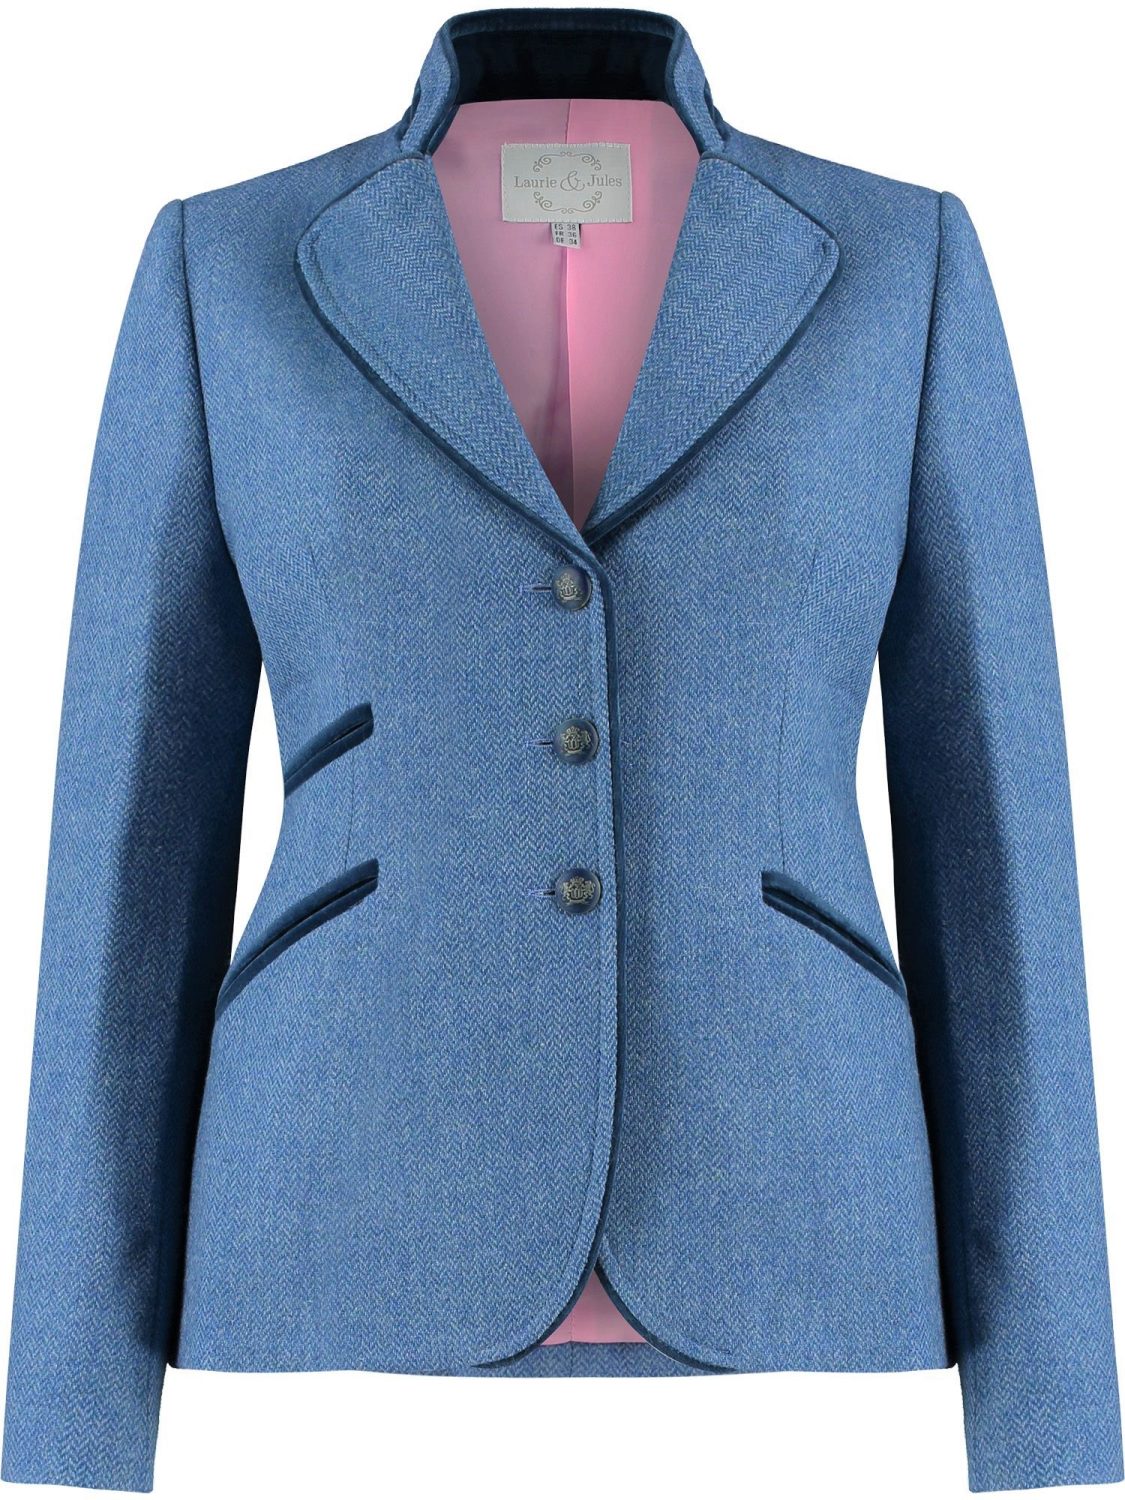 Amora Blue Tweed Jacket m